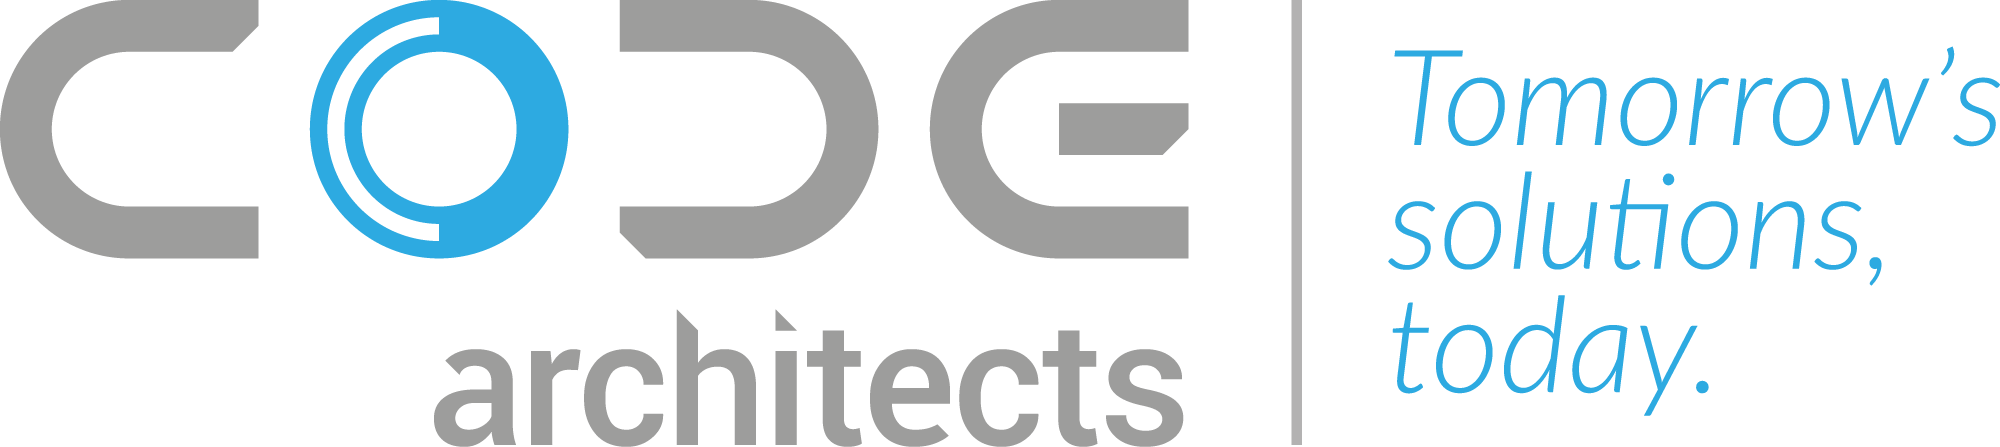 logo CODE ARCHITECTS